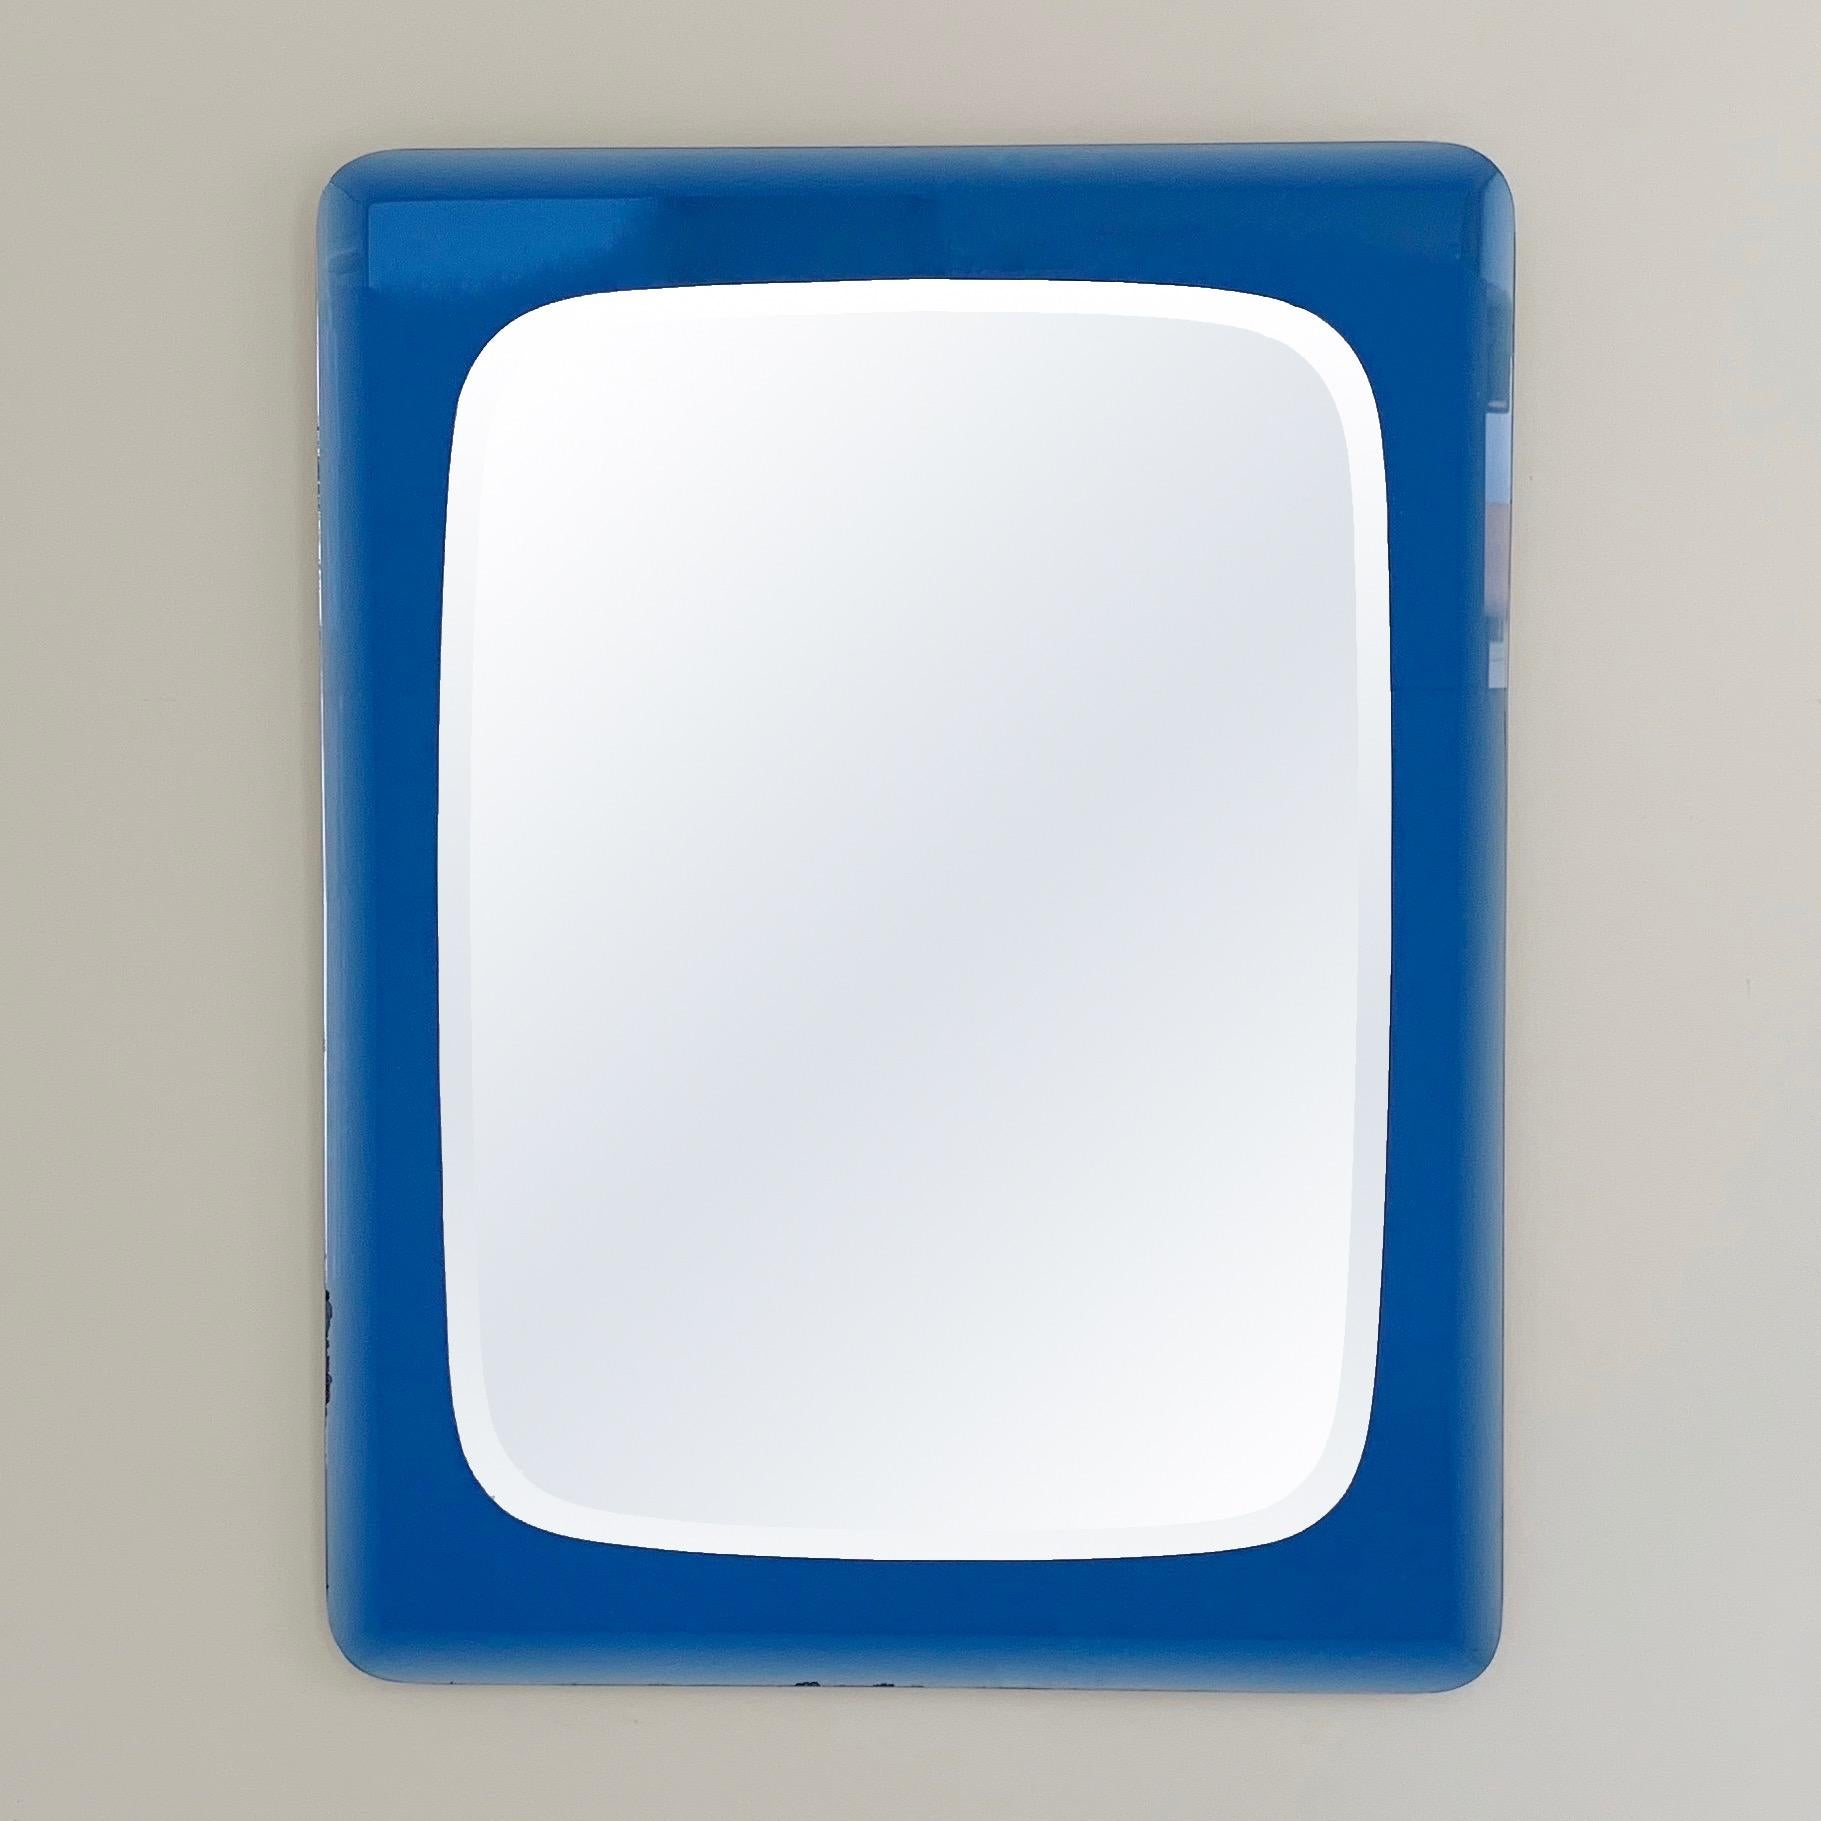 Magnifique miroir mural du milieu du siècle de Cristal Arte, circa 1960, Italie.
Double niveau : cadre en verre biseauté et miroir bleu cobalt, miroir biseauté.
Dimensions : 70 cm L, 90 cm H, 3 cm P.
Modèle rare sur le marché, avec un bel état